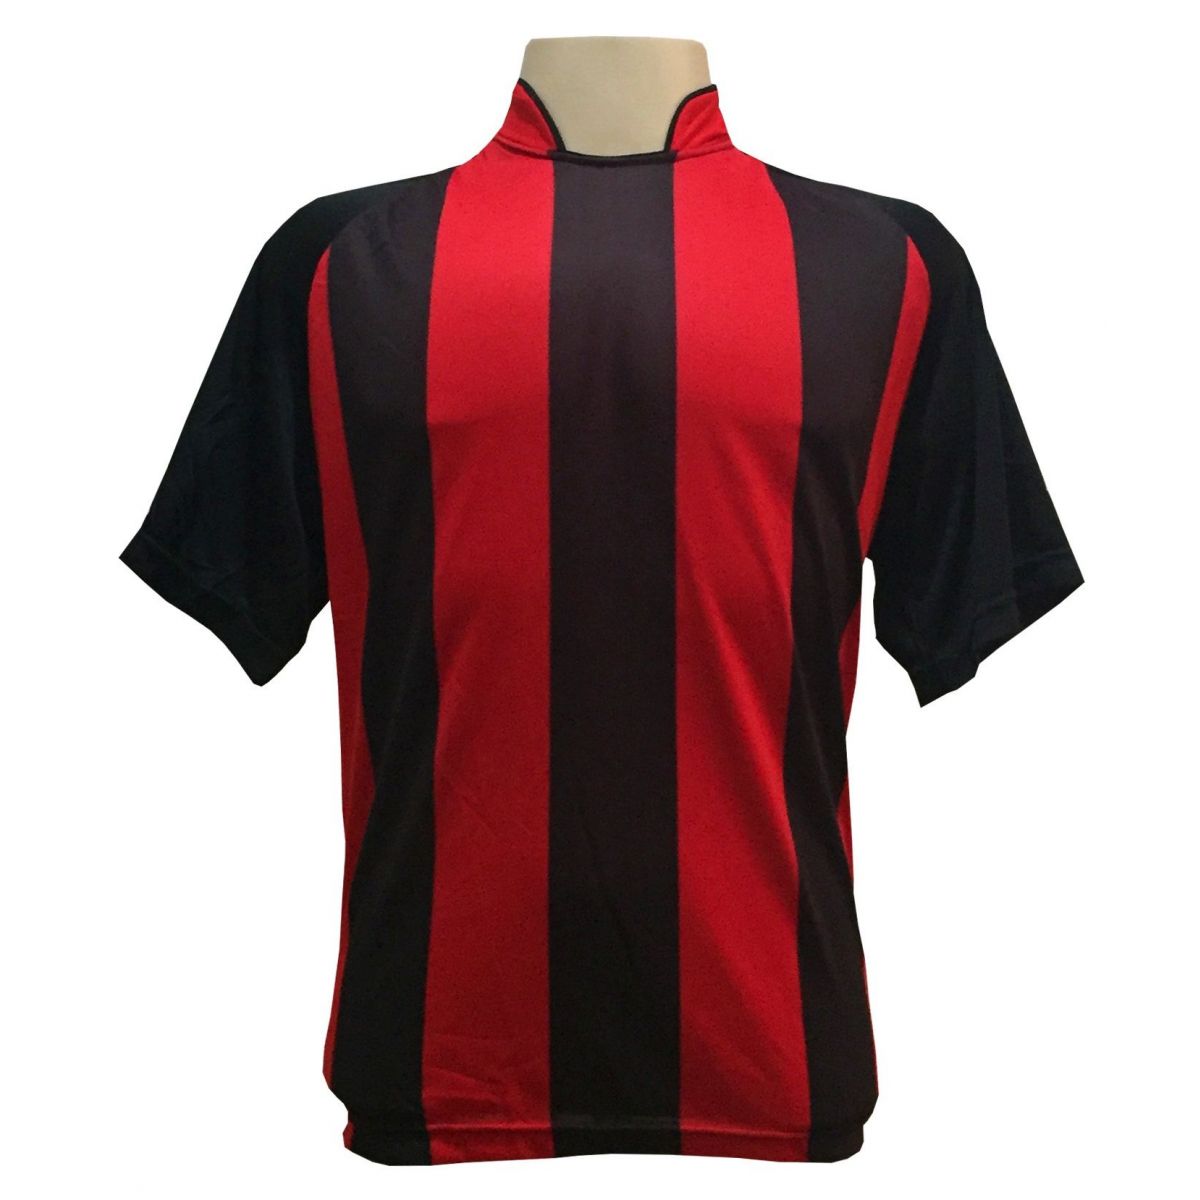 Uniforme Esportivo com 18 camisas modelo Milan Preto/Vermelho + 18 calções modelo Copa Preto/Vermelho + Brindes